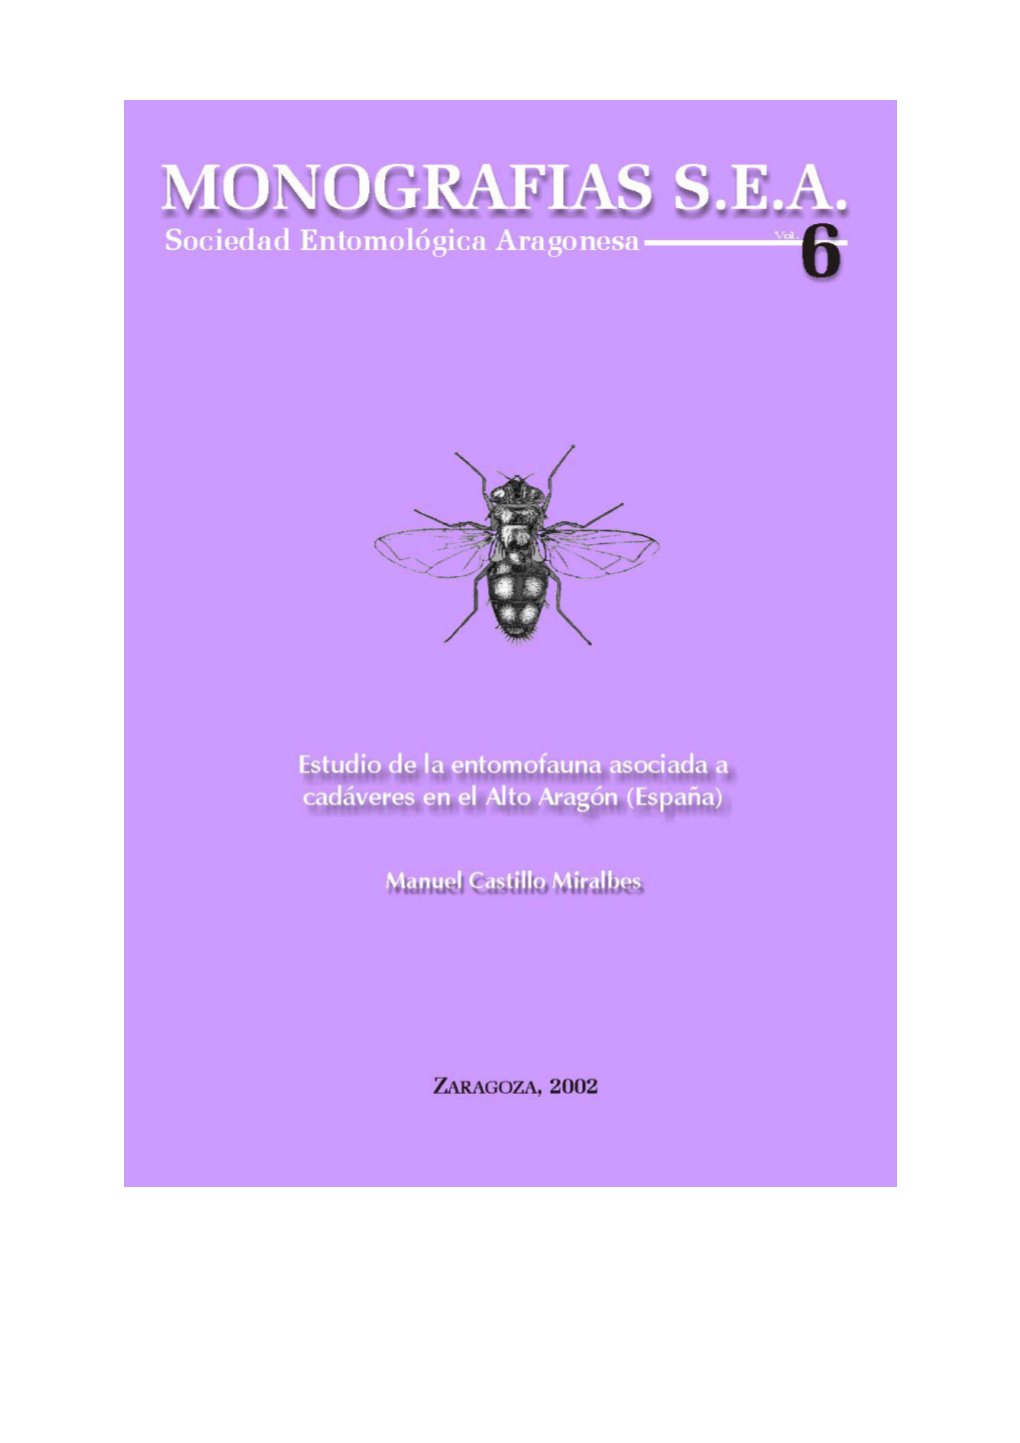 Estudio De La Entomofauna Asociada a Cadáveres En El Alto Aragón (España) Autores: Manuel Castillo Miralbes Edita: Sociedad Entomológica Aragonesa (SEA)